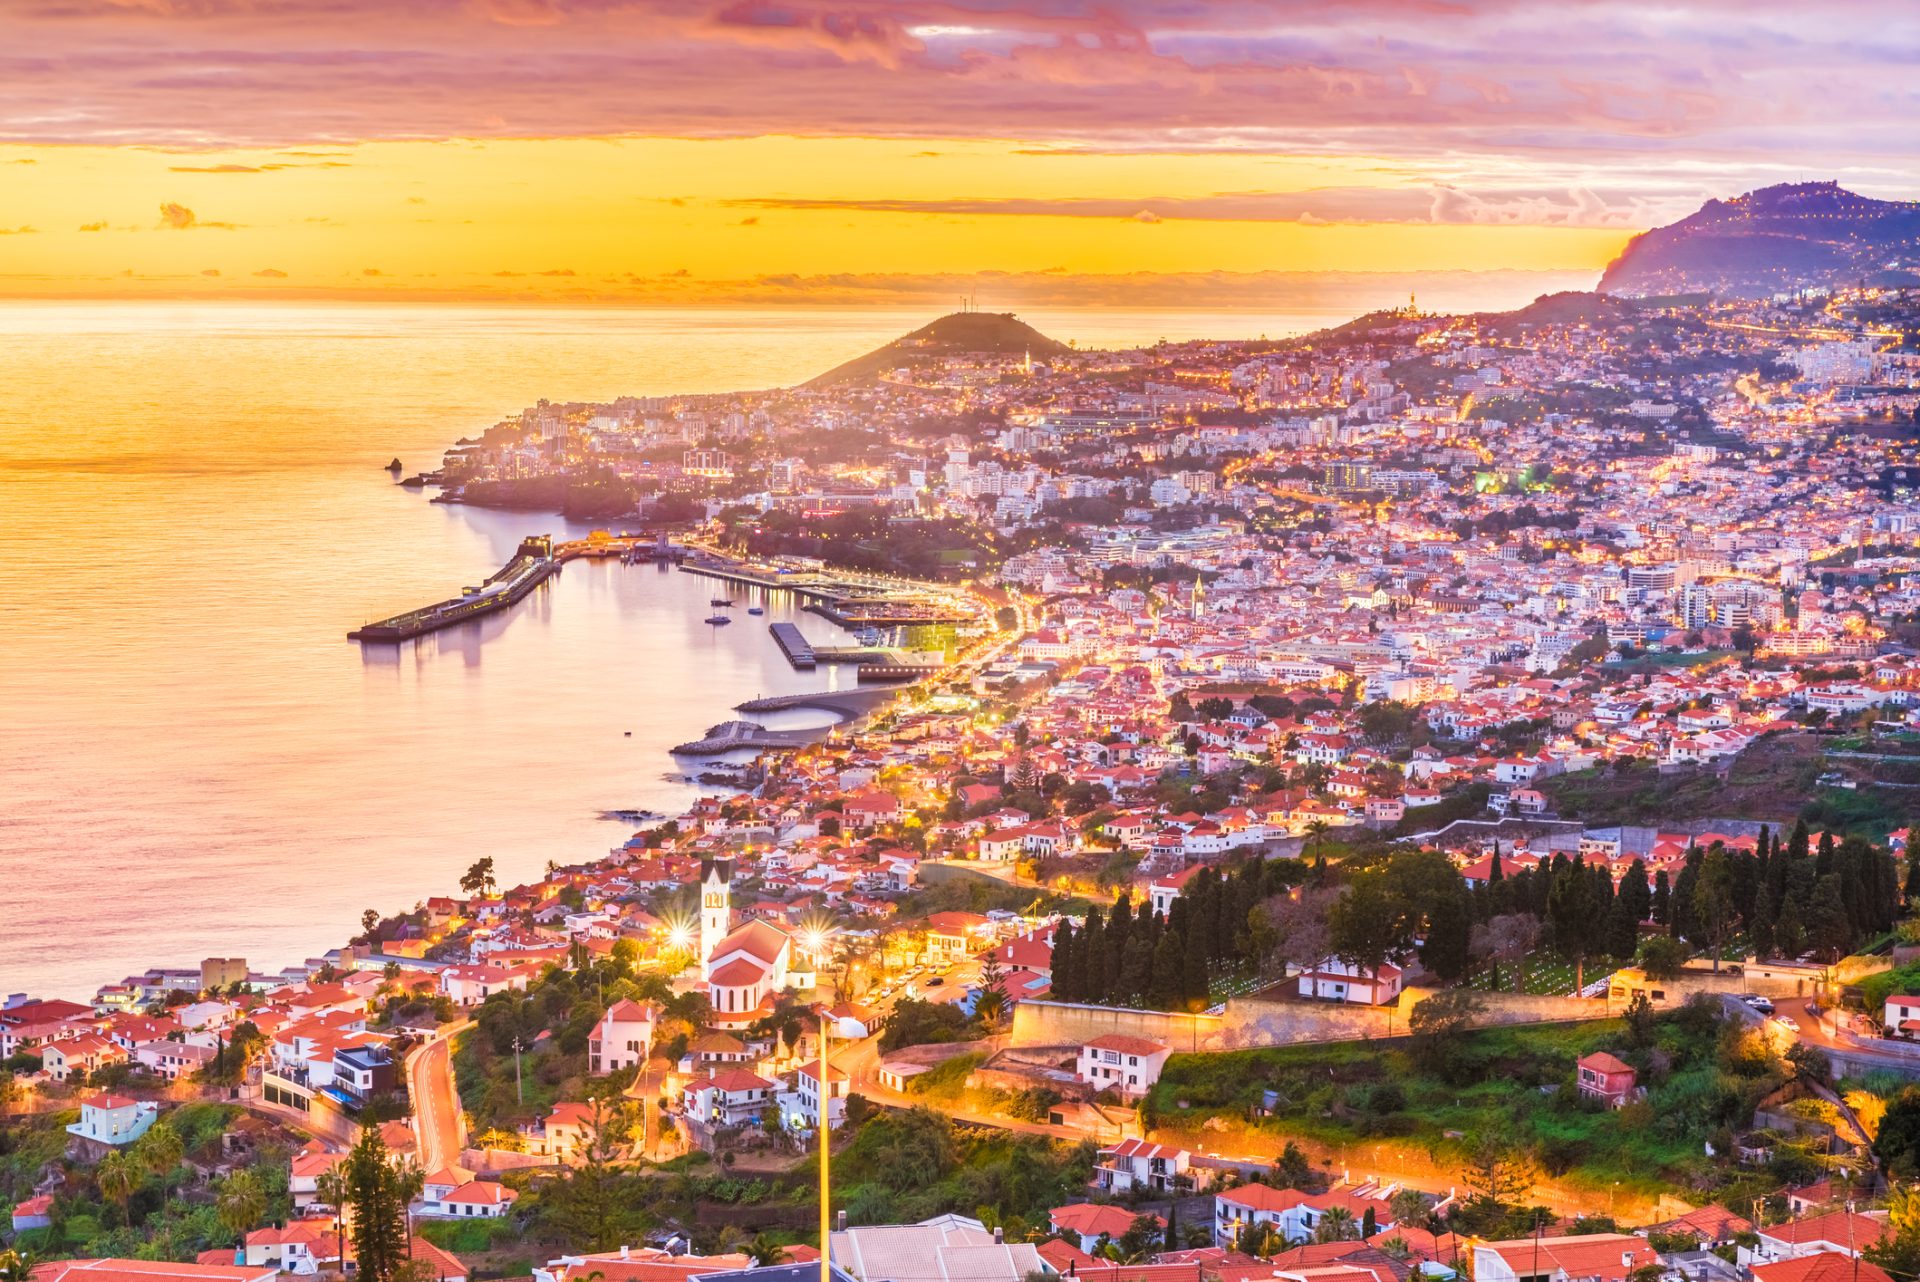 Travel Awards. Portugal com 11 distinções, incluindo ‘Melhor Destino Insular’ e ‘Melhor Destino Praia’